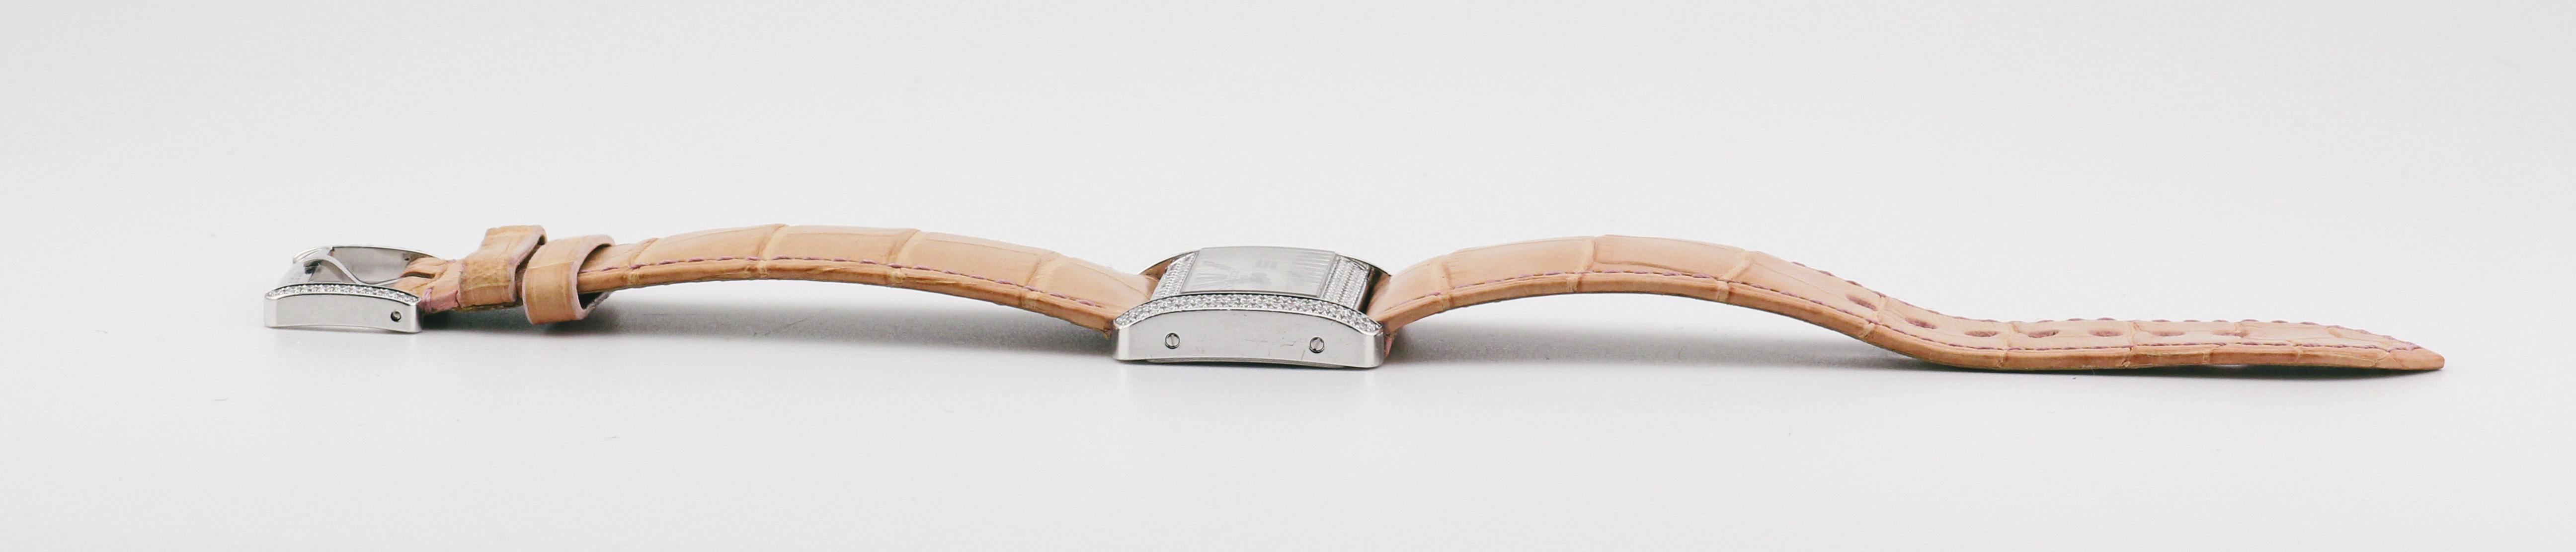 Brilliant Cut Cartier Divan 32mm 18K White Gold Factory Diamond Watch For Sale